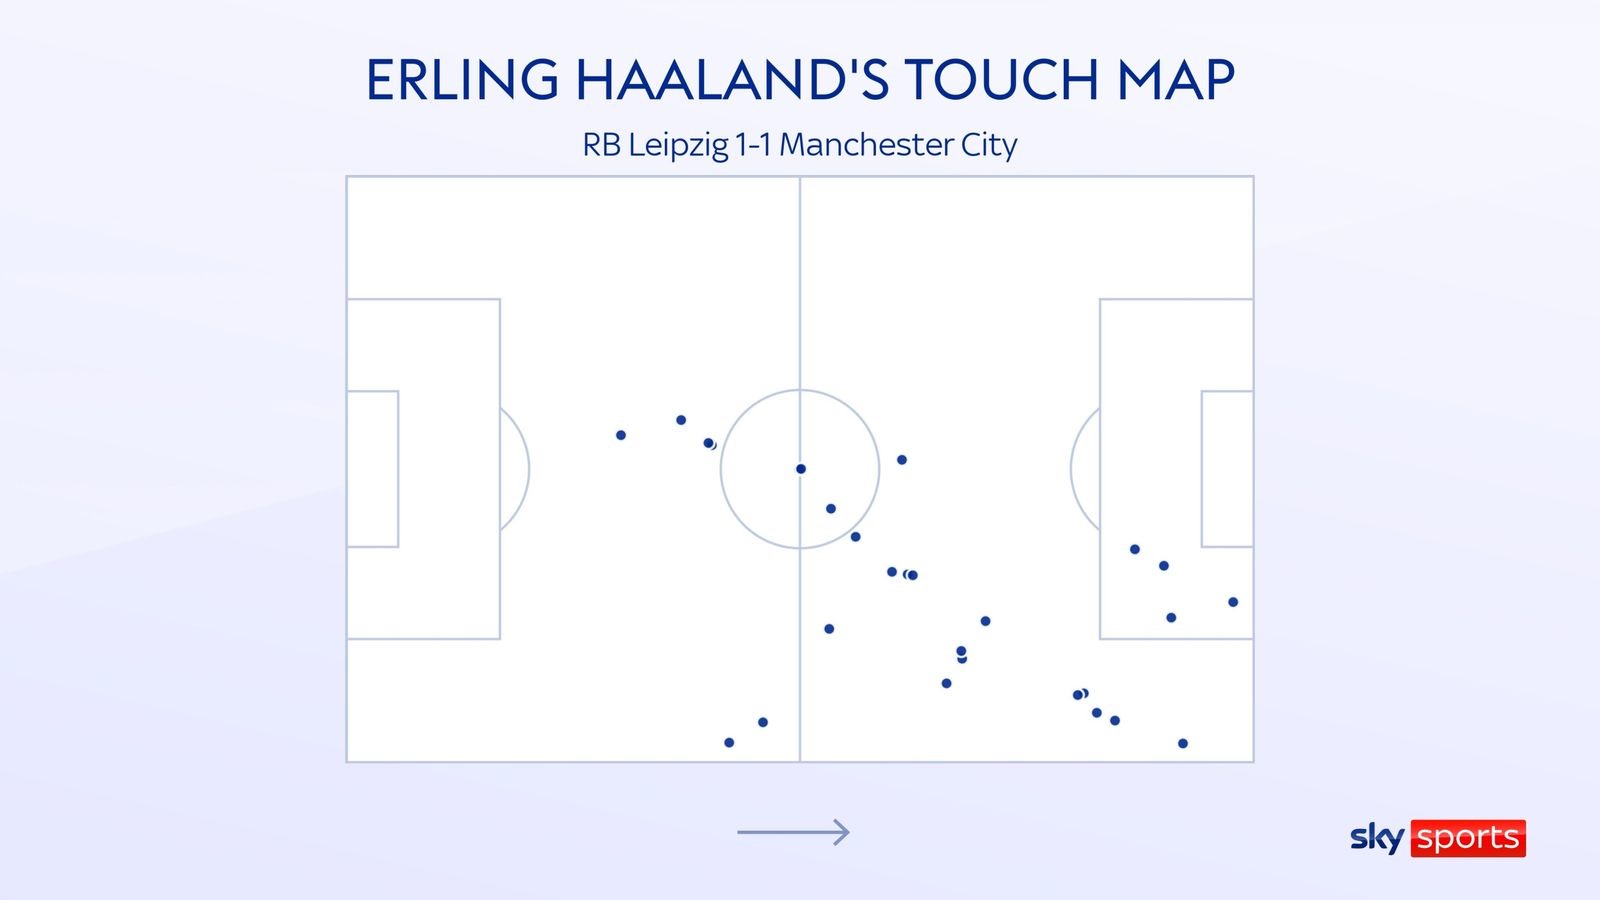 22 điểm chạm bóng của Haaland trong trận đấu với Leipzig. Ảnh: Sky Sports